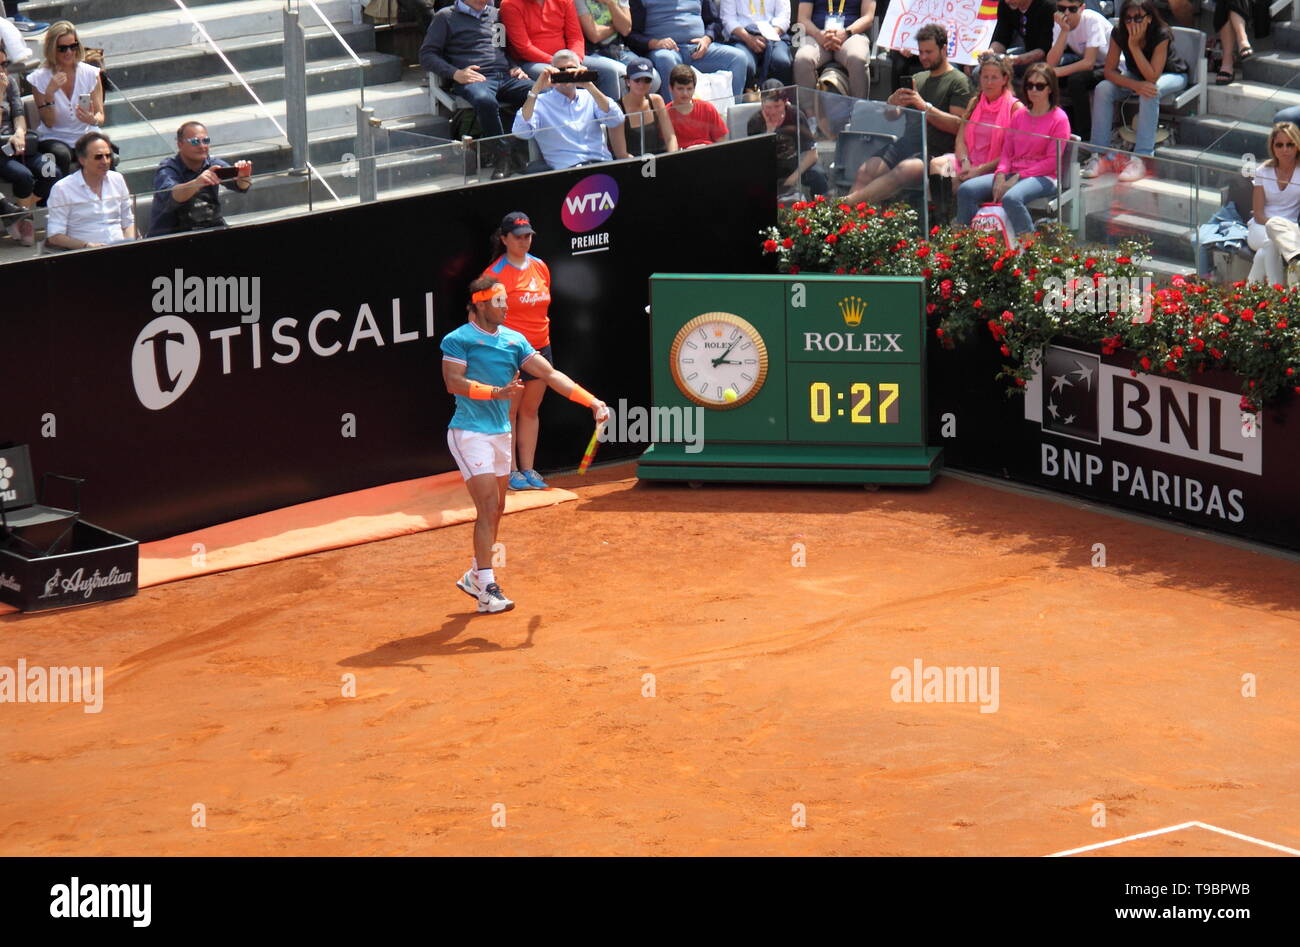 Roma, Italia - 17 de mayo de 2019: Rafael Nadal vs Fernando Verdasco en los cuartos de final en el Campeonato de tenis ATP 2019 en Roma, Italia. Nadal gana Foto de stock